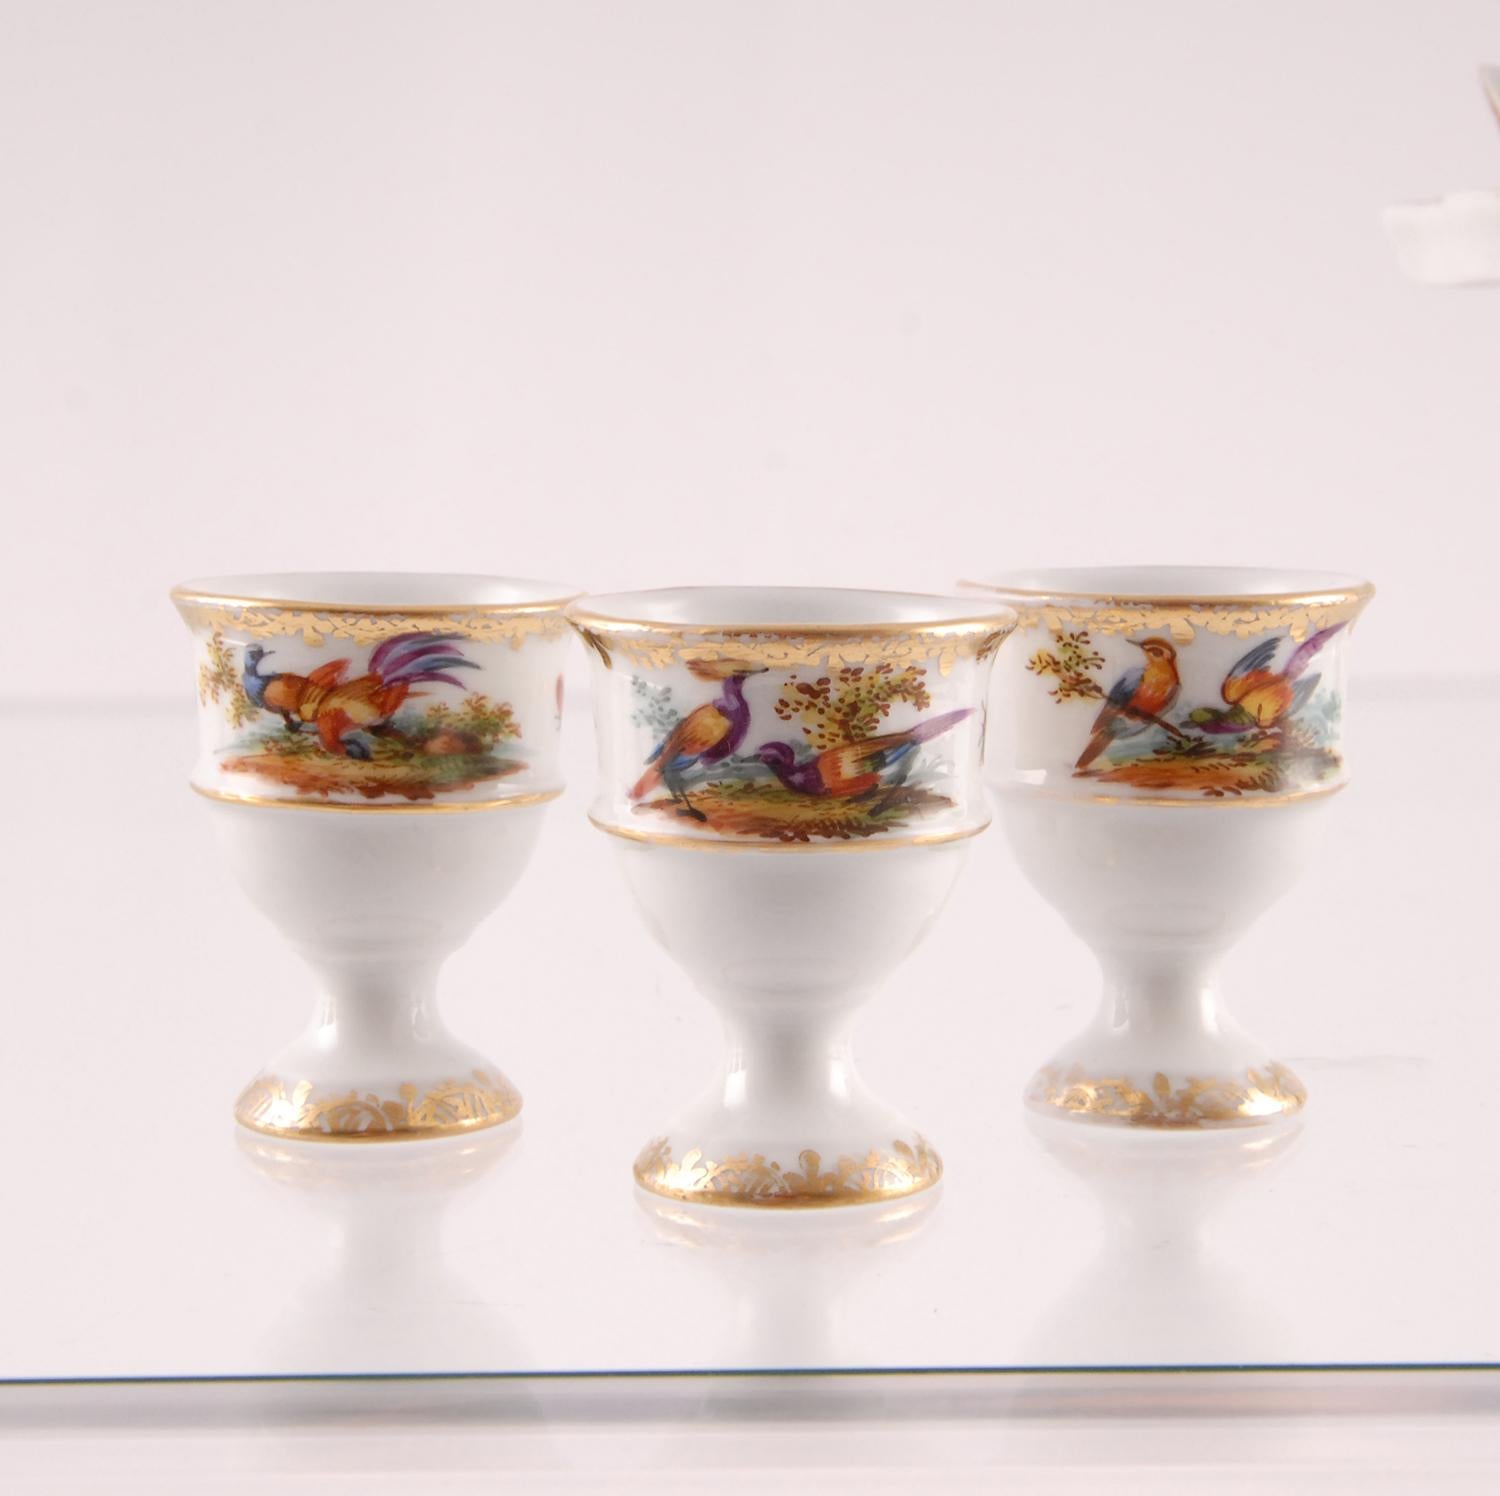 Porcelain Egg Stand Cruet 18th century Meissen Style Victorian German Handmade 2